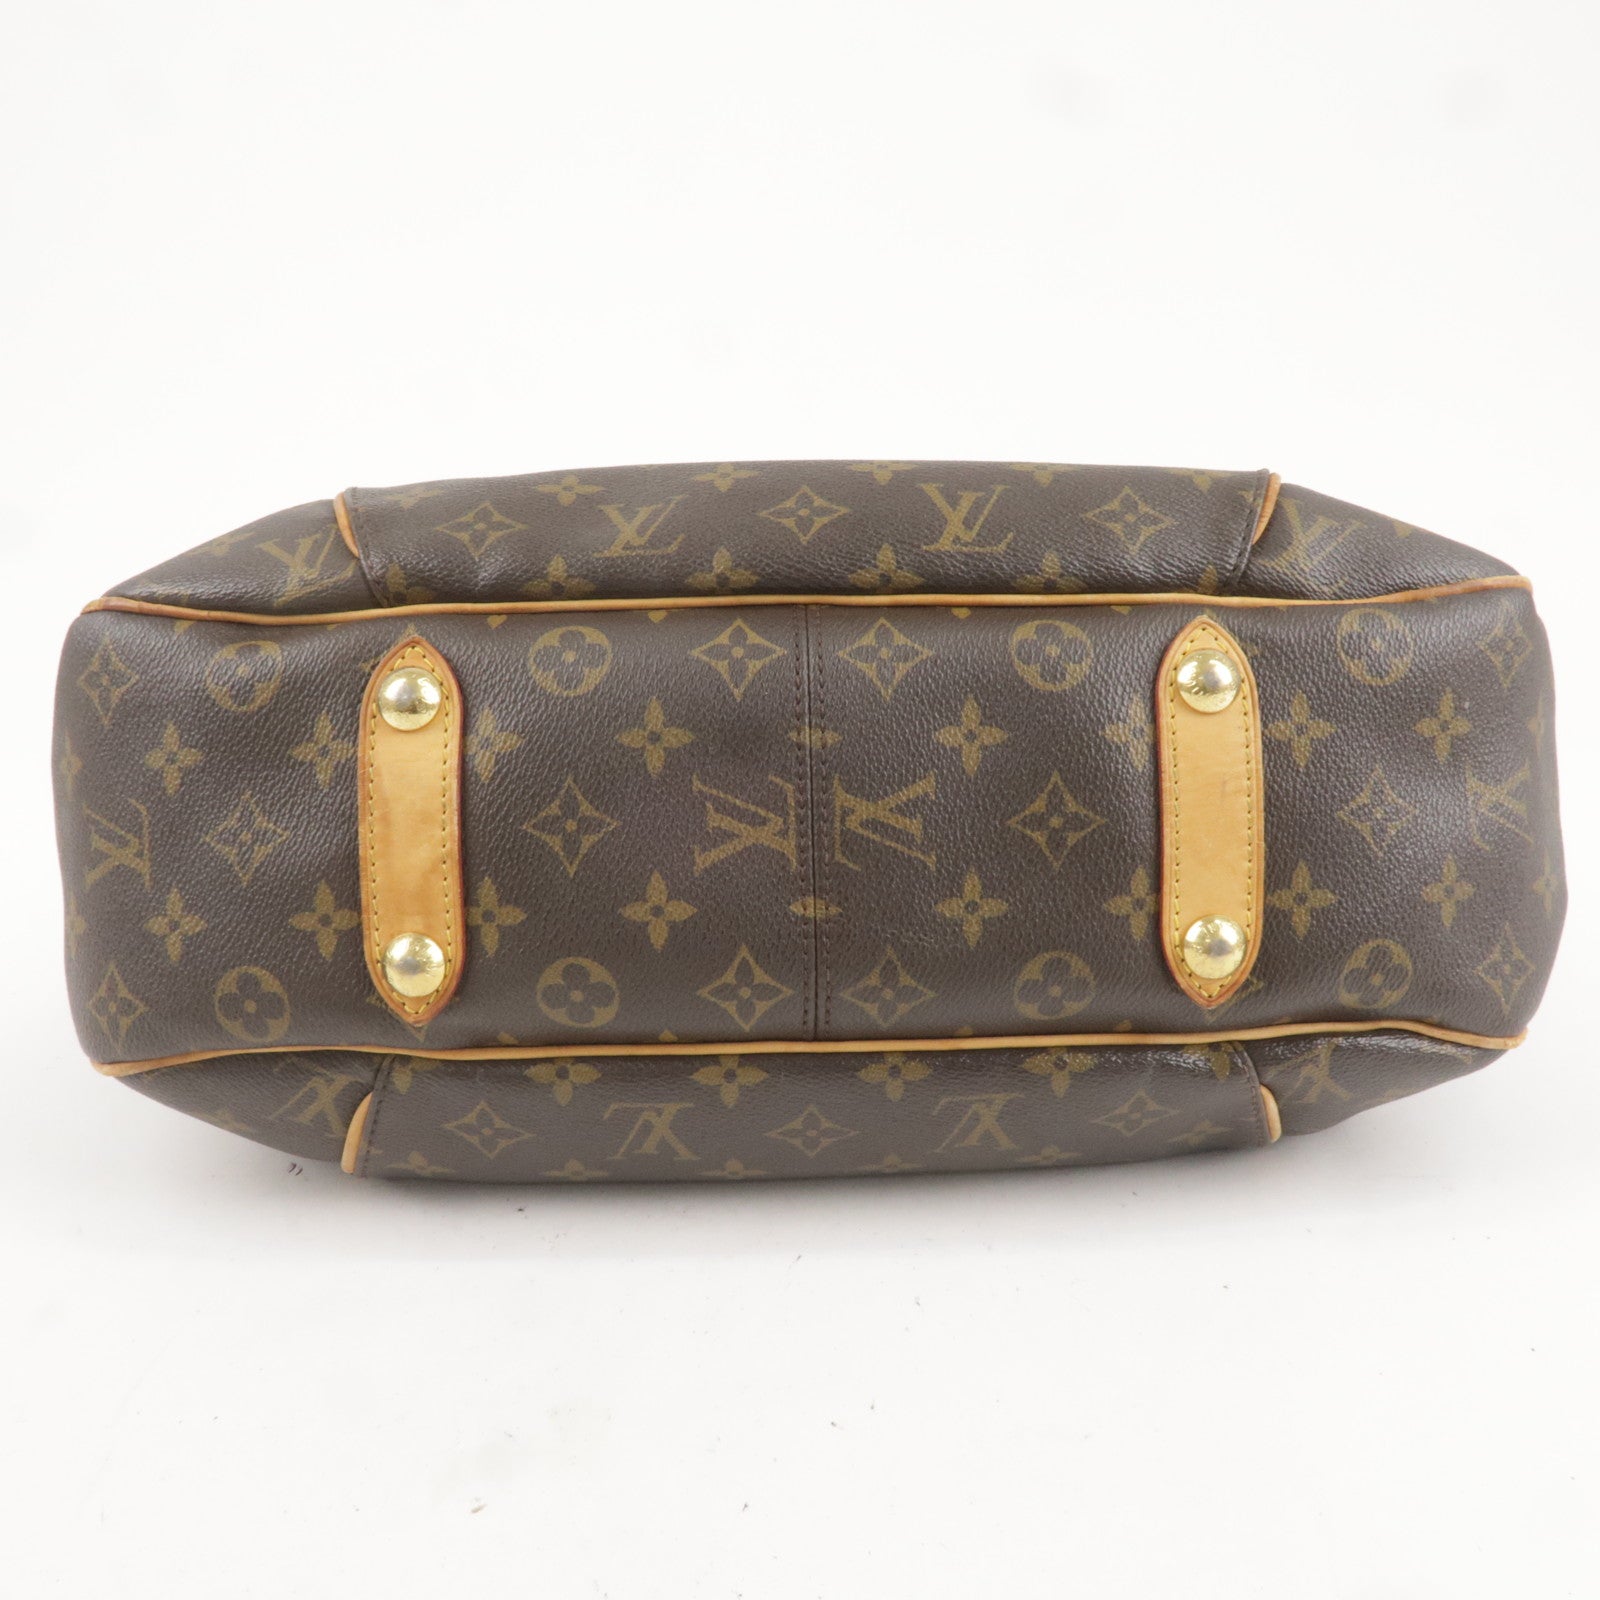 Shop Louis Vuitton Online: Louis Vuitton Monogram Canvas Galliera PM M56382  handbags